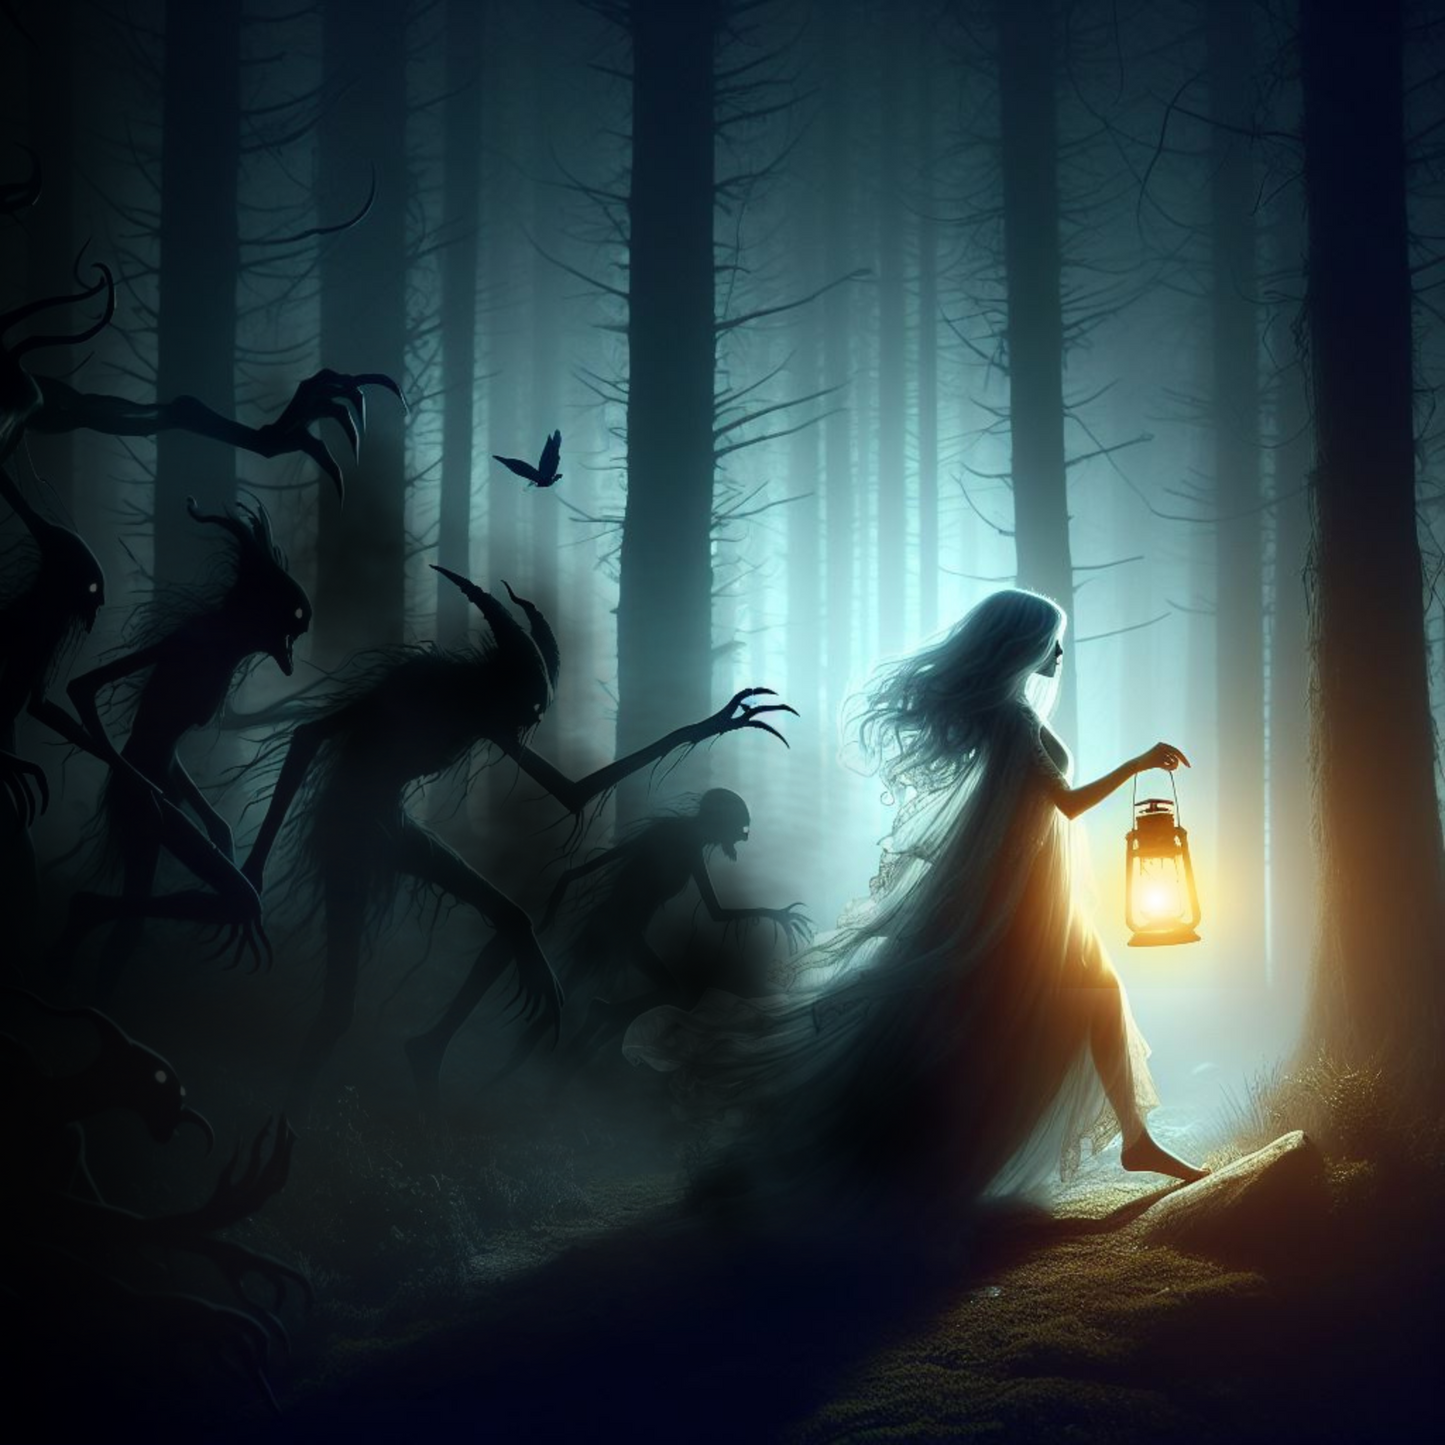 Frau läuft mit Laterne durch einen dunklen Wald. Monster laufe hinter ihr her.